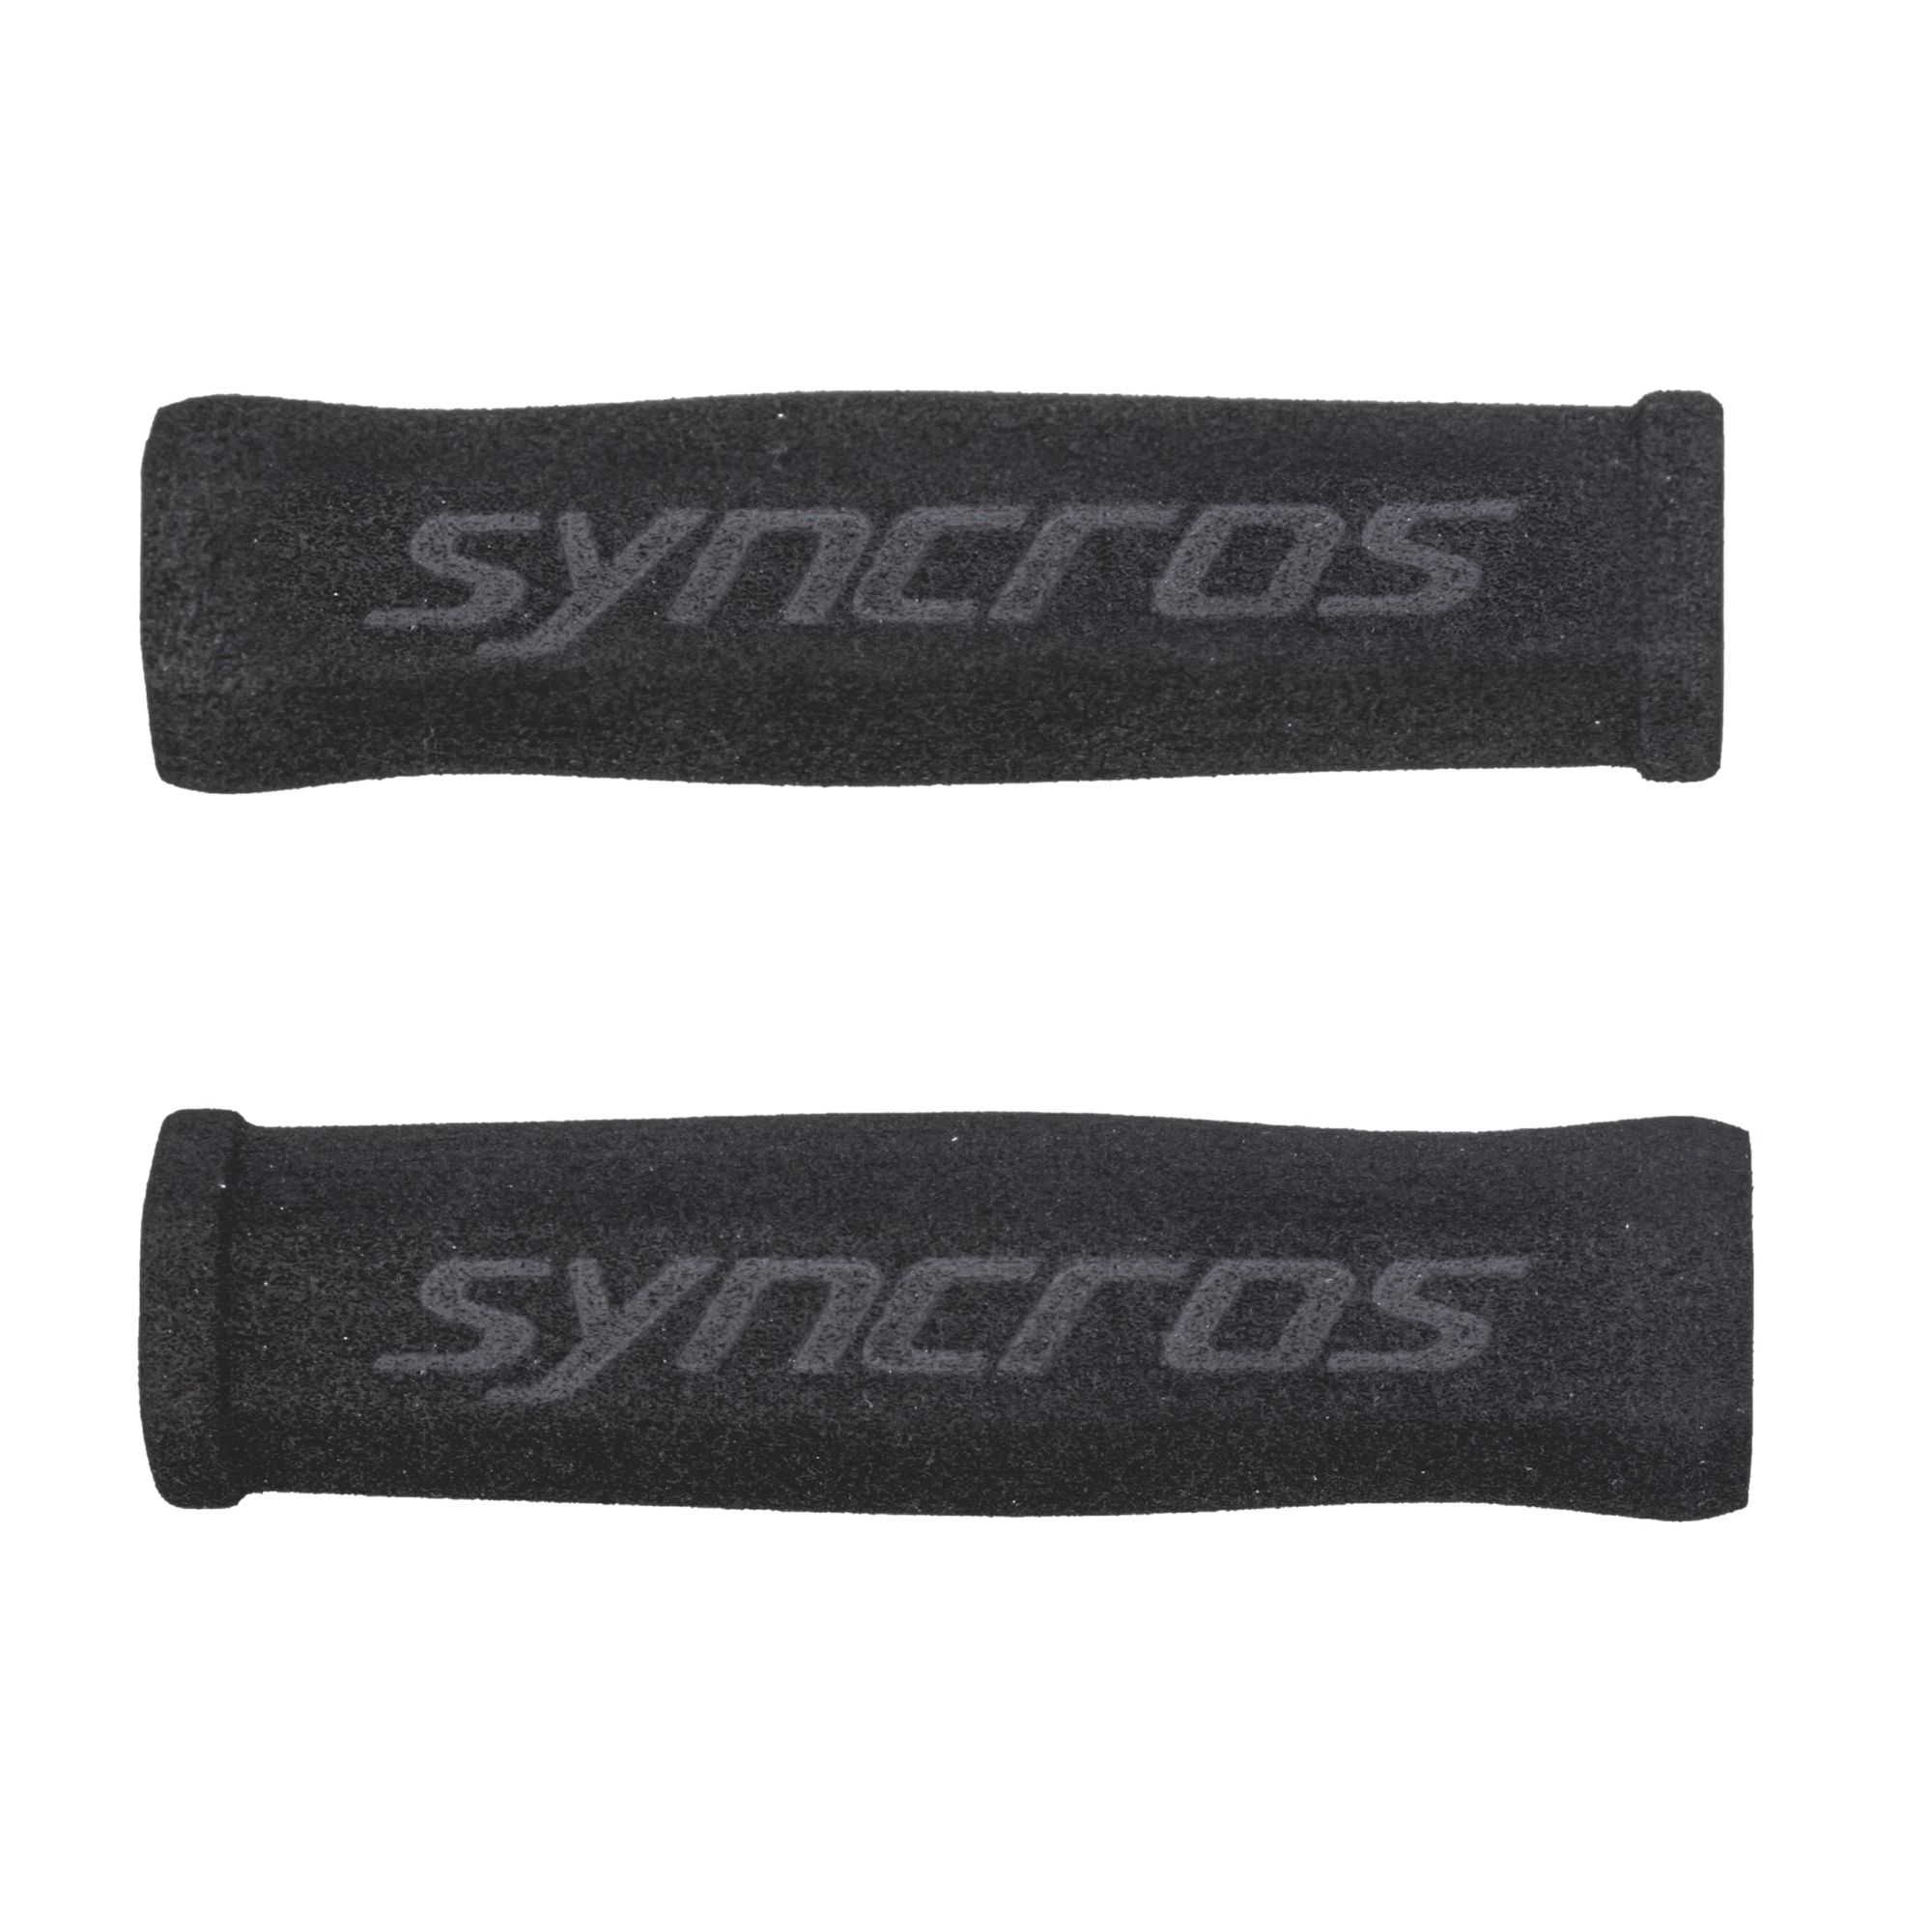 Syncros Grips Foam